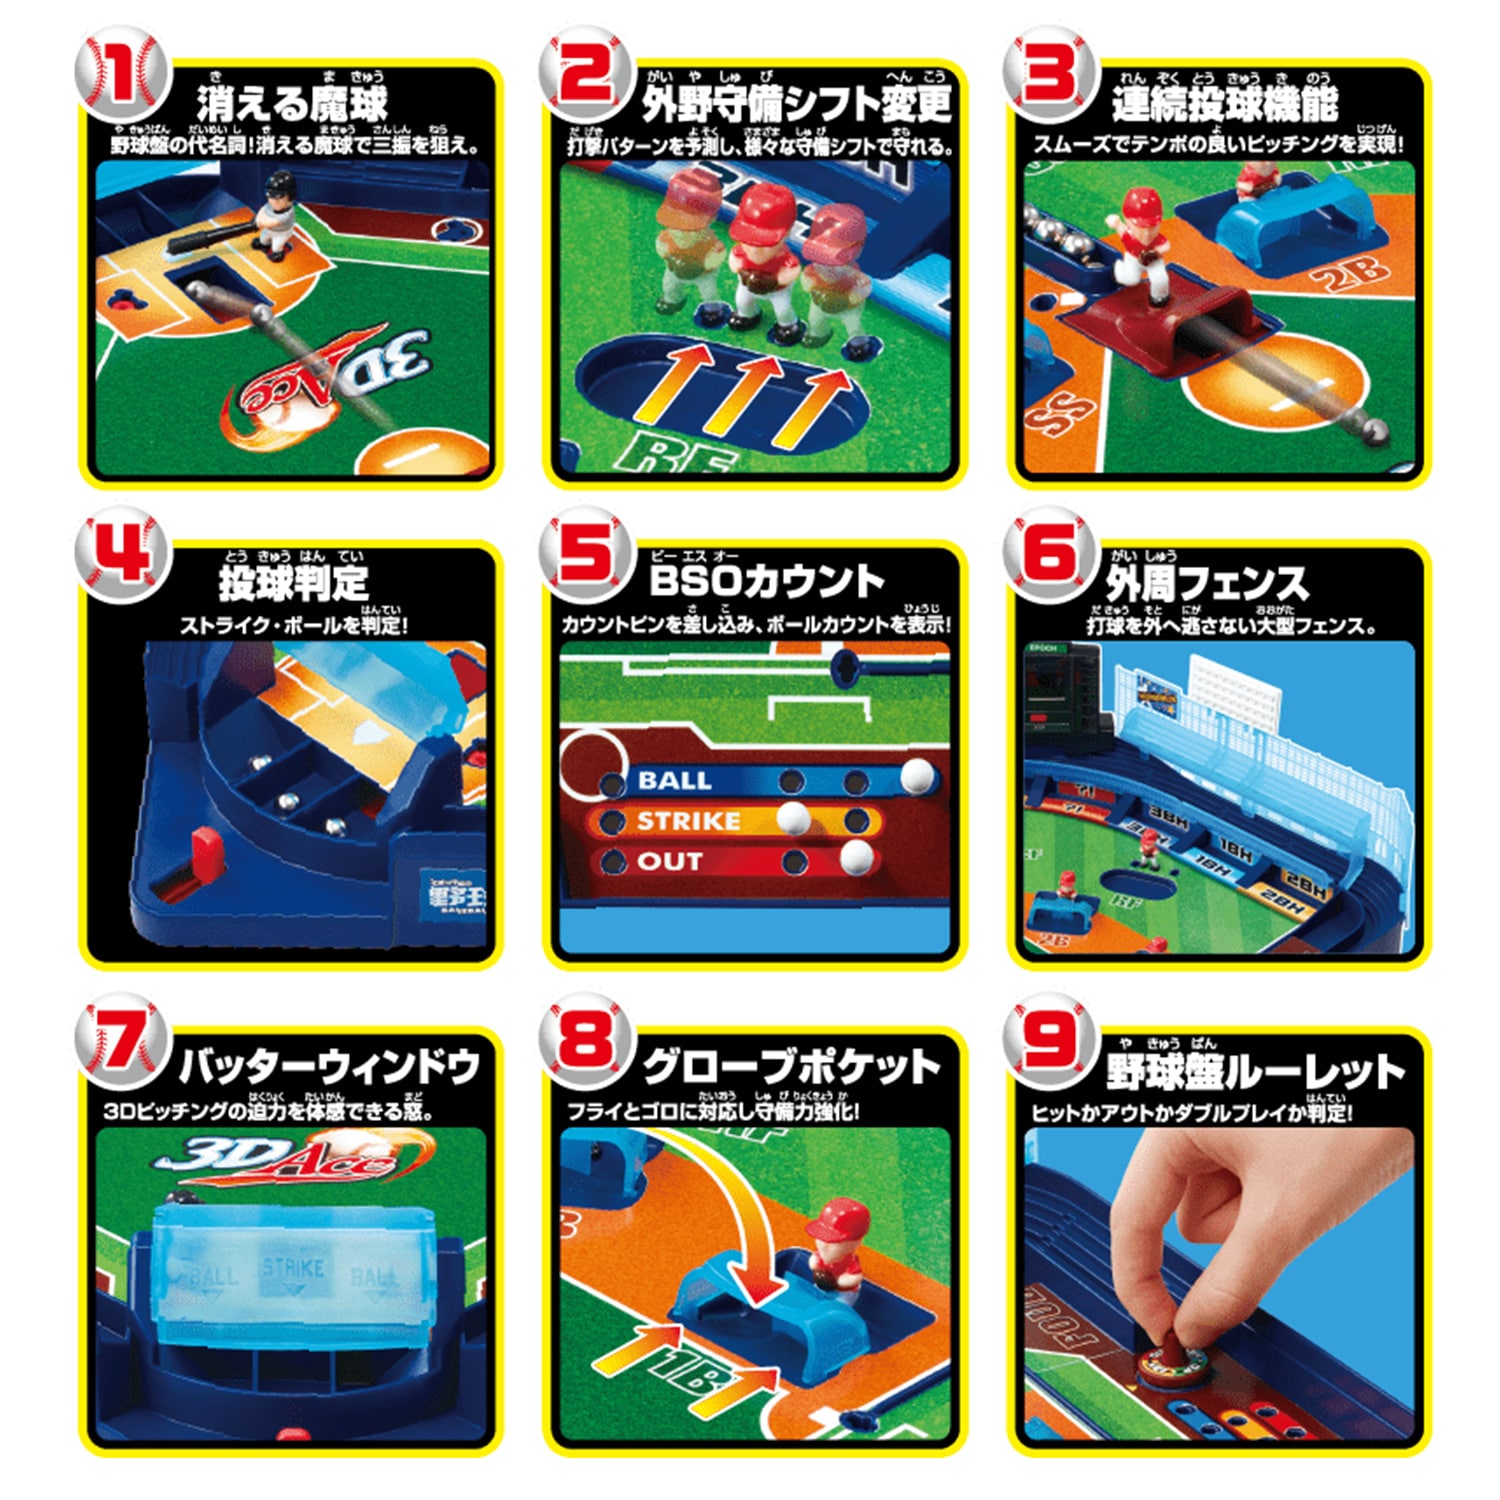 野球盤 3Dエース オーロラビジョン｜商品カタログ｜エポック社の野球盤 